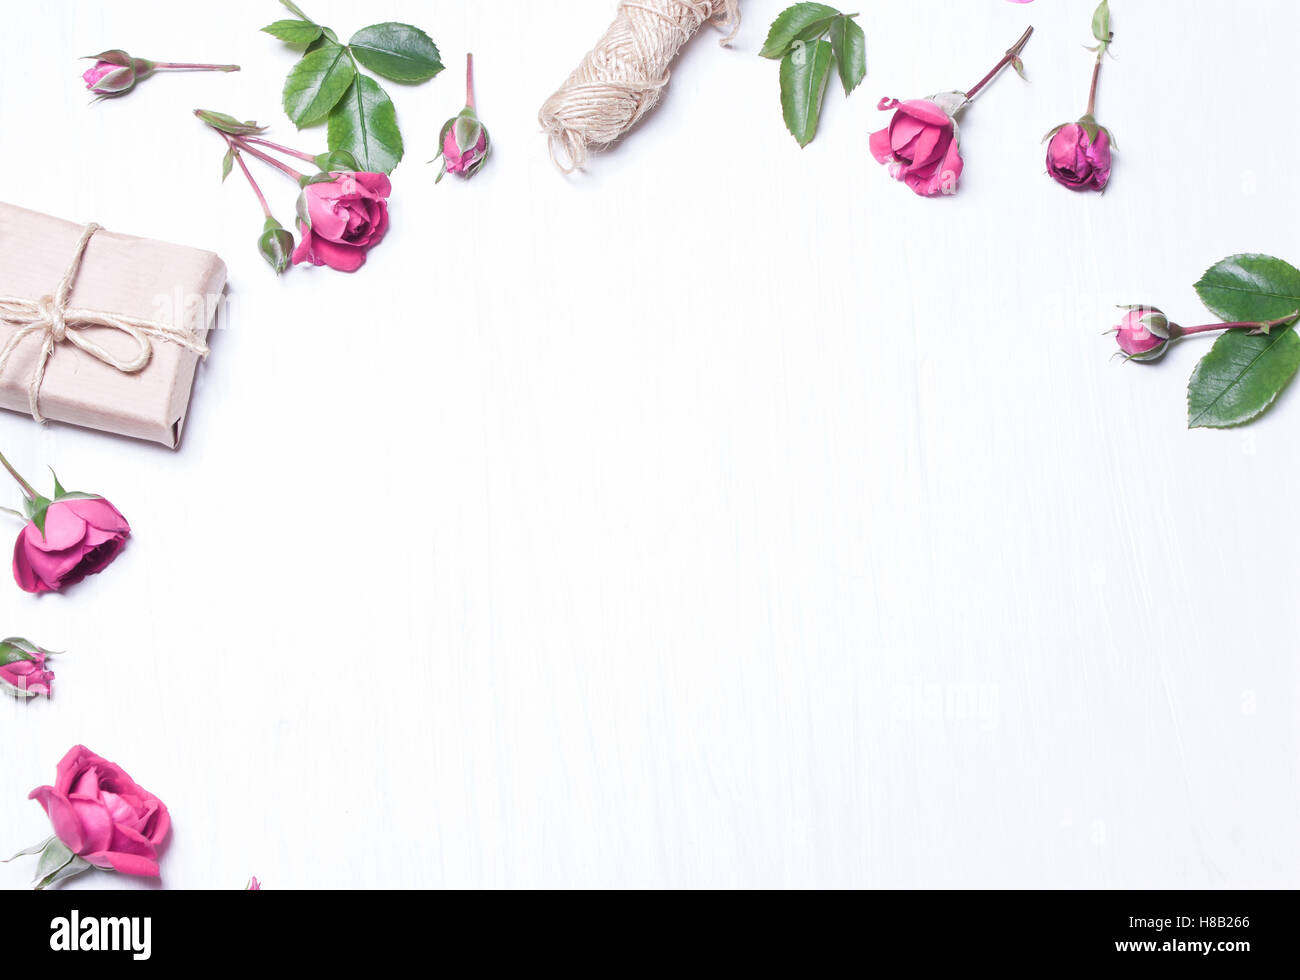 Die Zusammensetzung, Muster aus roten Rosen, ein Geschenk auf einem weißen Hintergrund. Rahmen der Blumen. Soft-Fokus. Ansicht von oben. Stockfoto